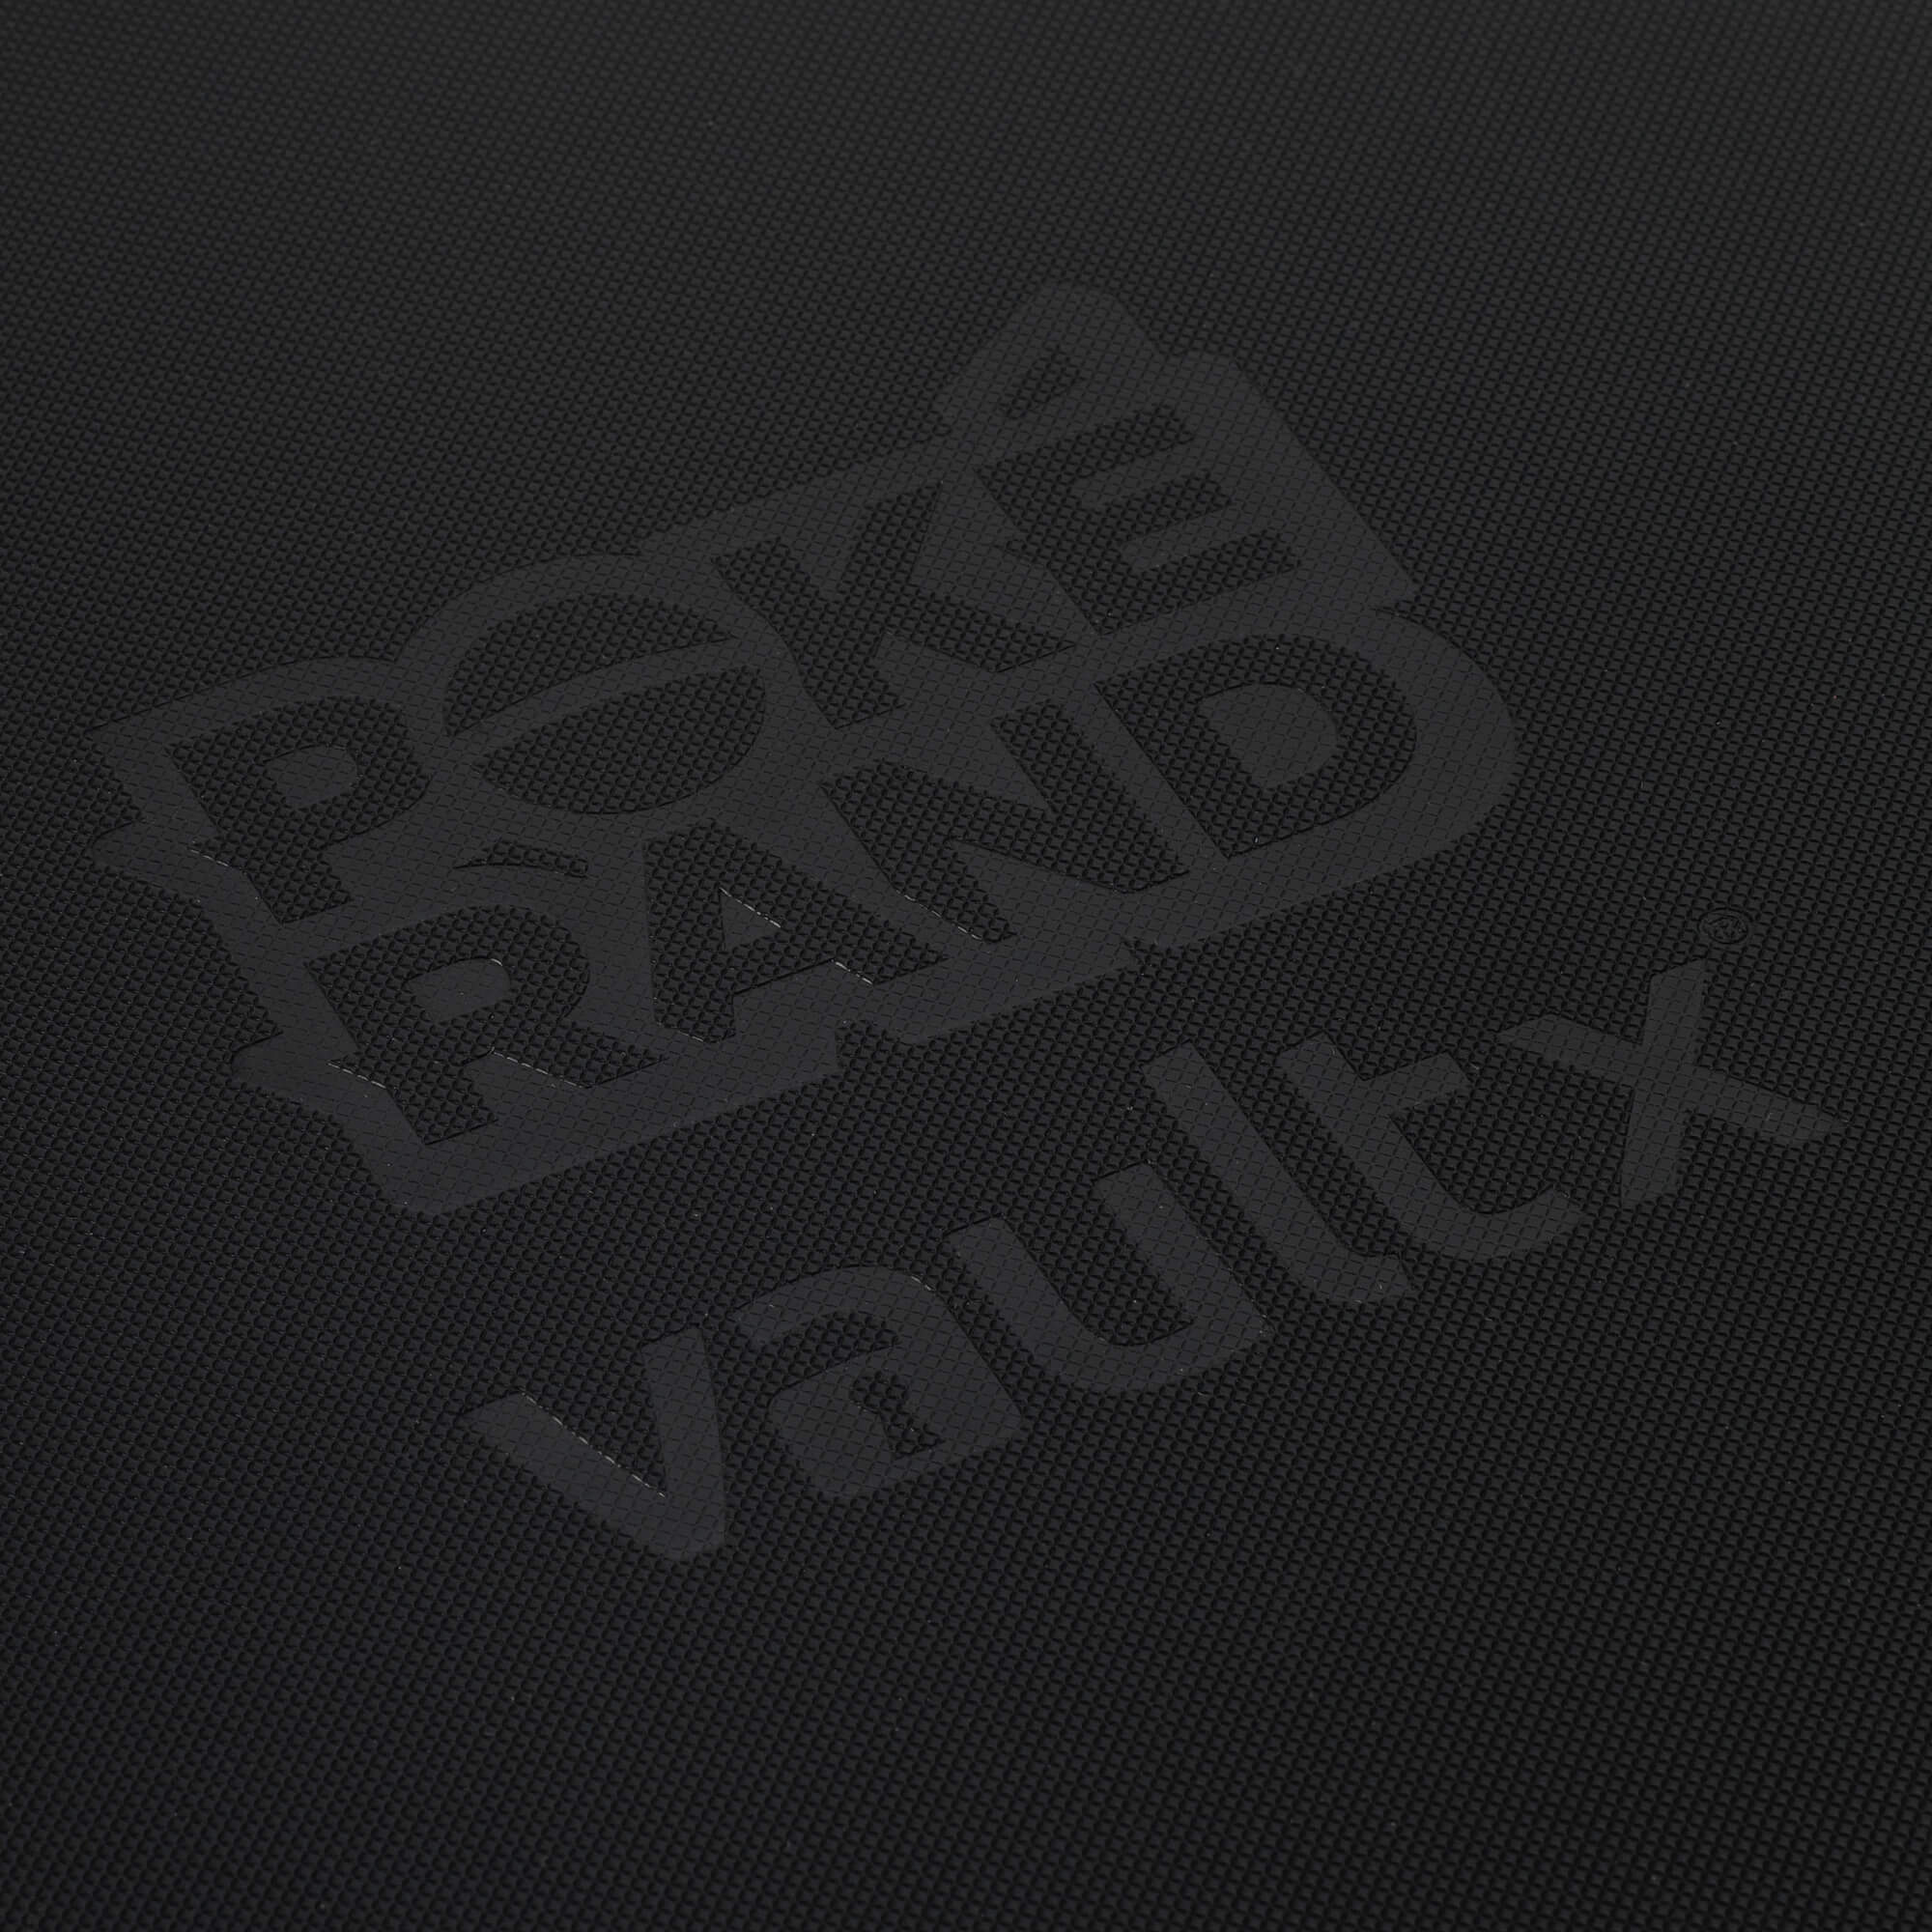 PokeRand Exclusive Vault X Premium eXo-Tec® 9 Pocket Zip Binder (Black & Red) - PokeRand